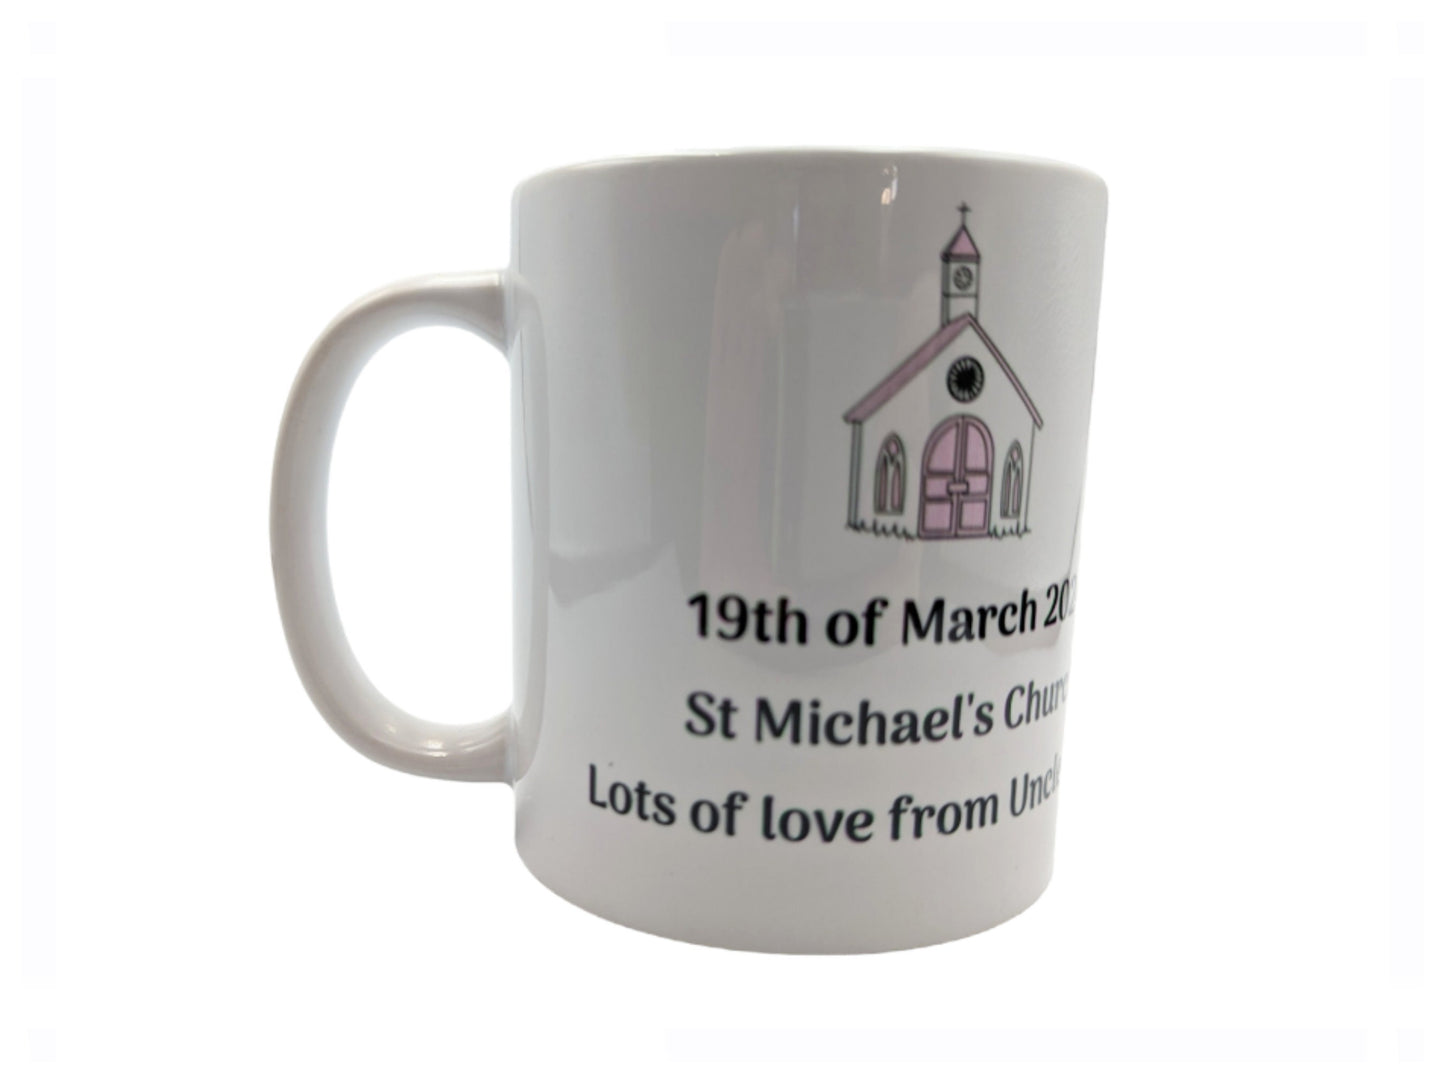 Personalized Holy Communion Mug, Catholic Mug, Religious gift, Stocking stuffer, First Communion, Holy Eucharist, Gift for her, Sacrament